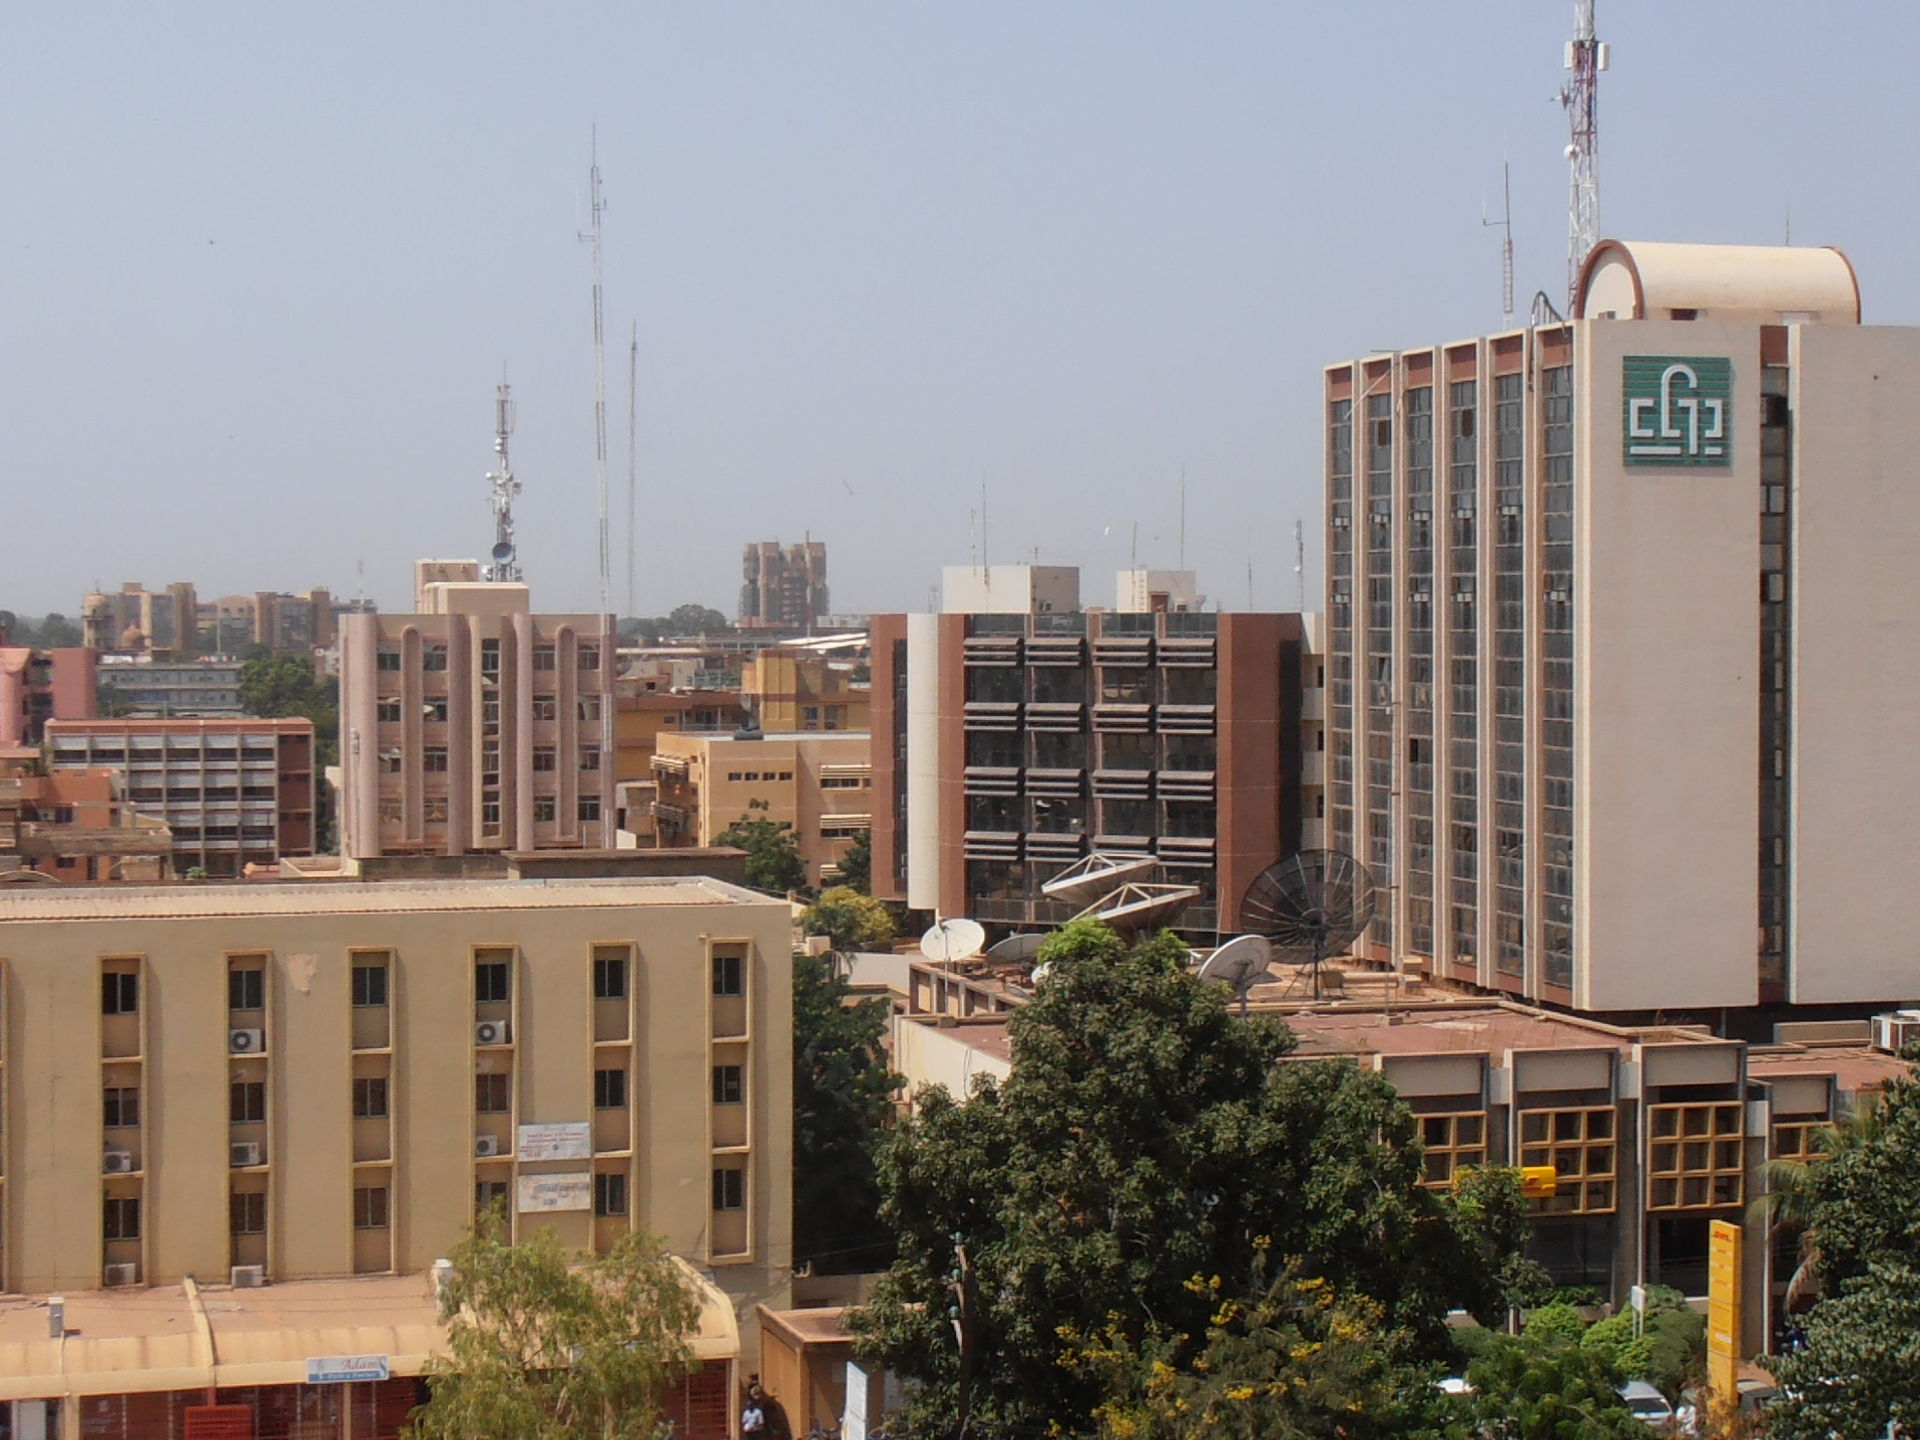 Faire des affaires au Burkina Faso : Ouagadougou, le charme de l'authenticité